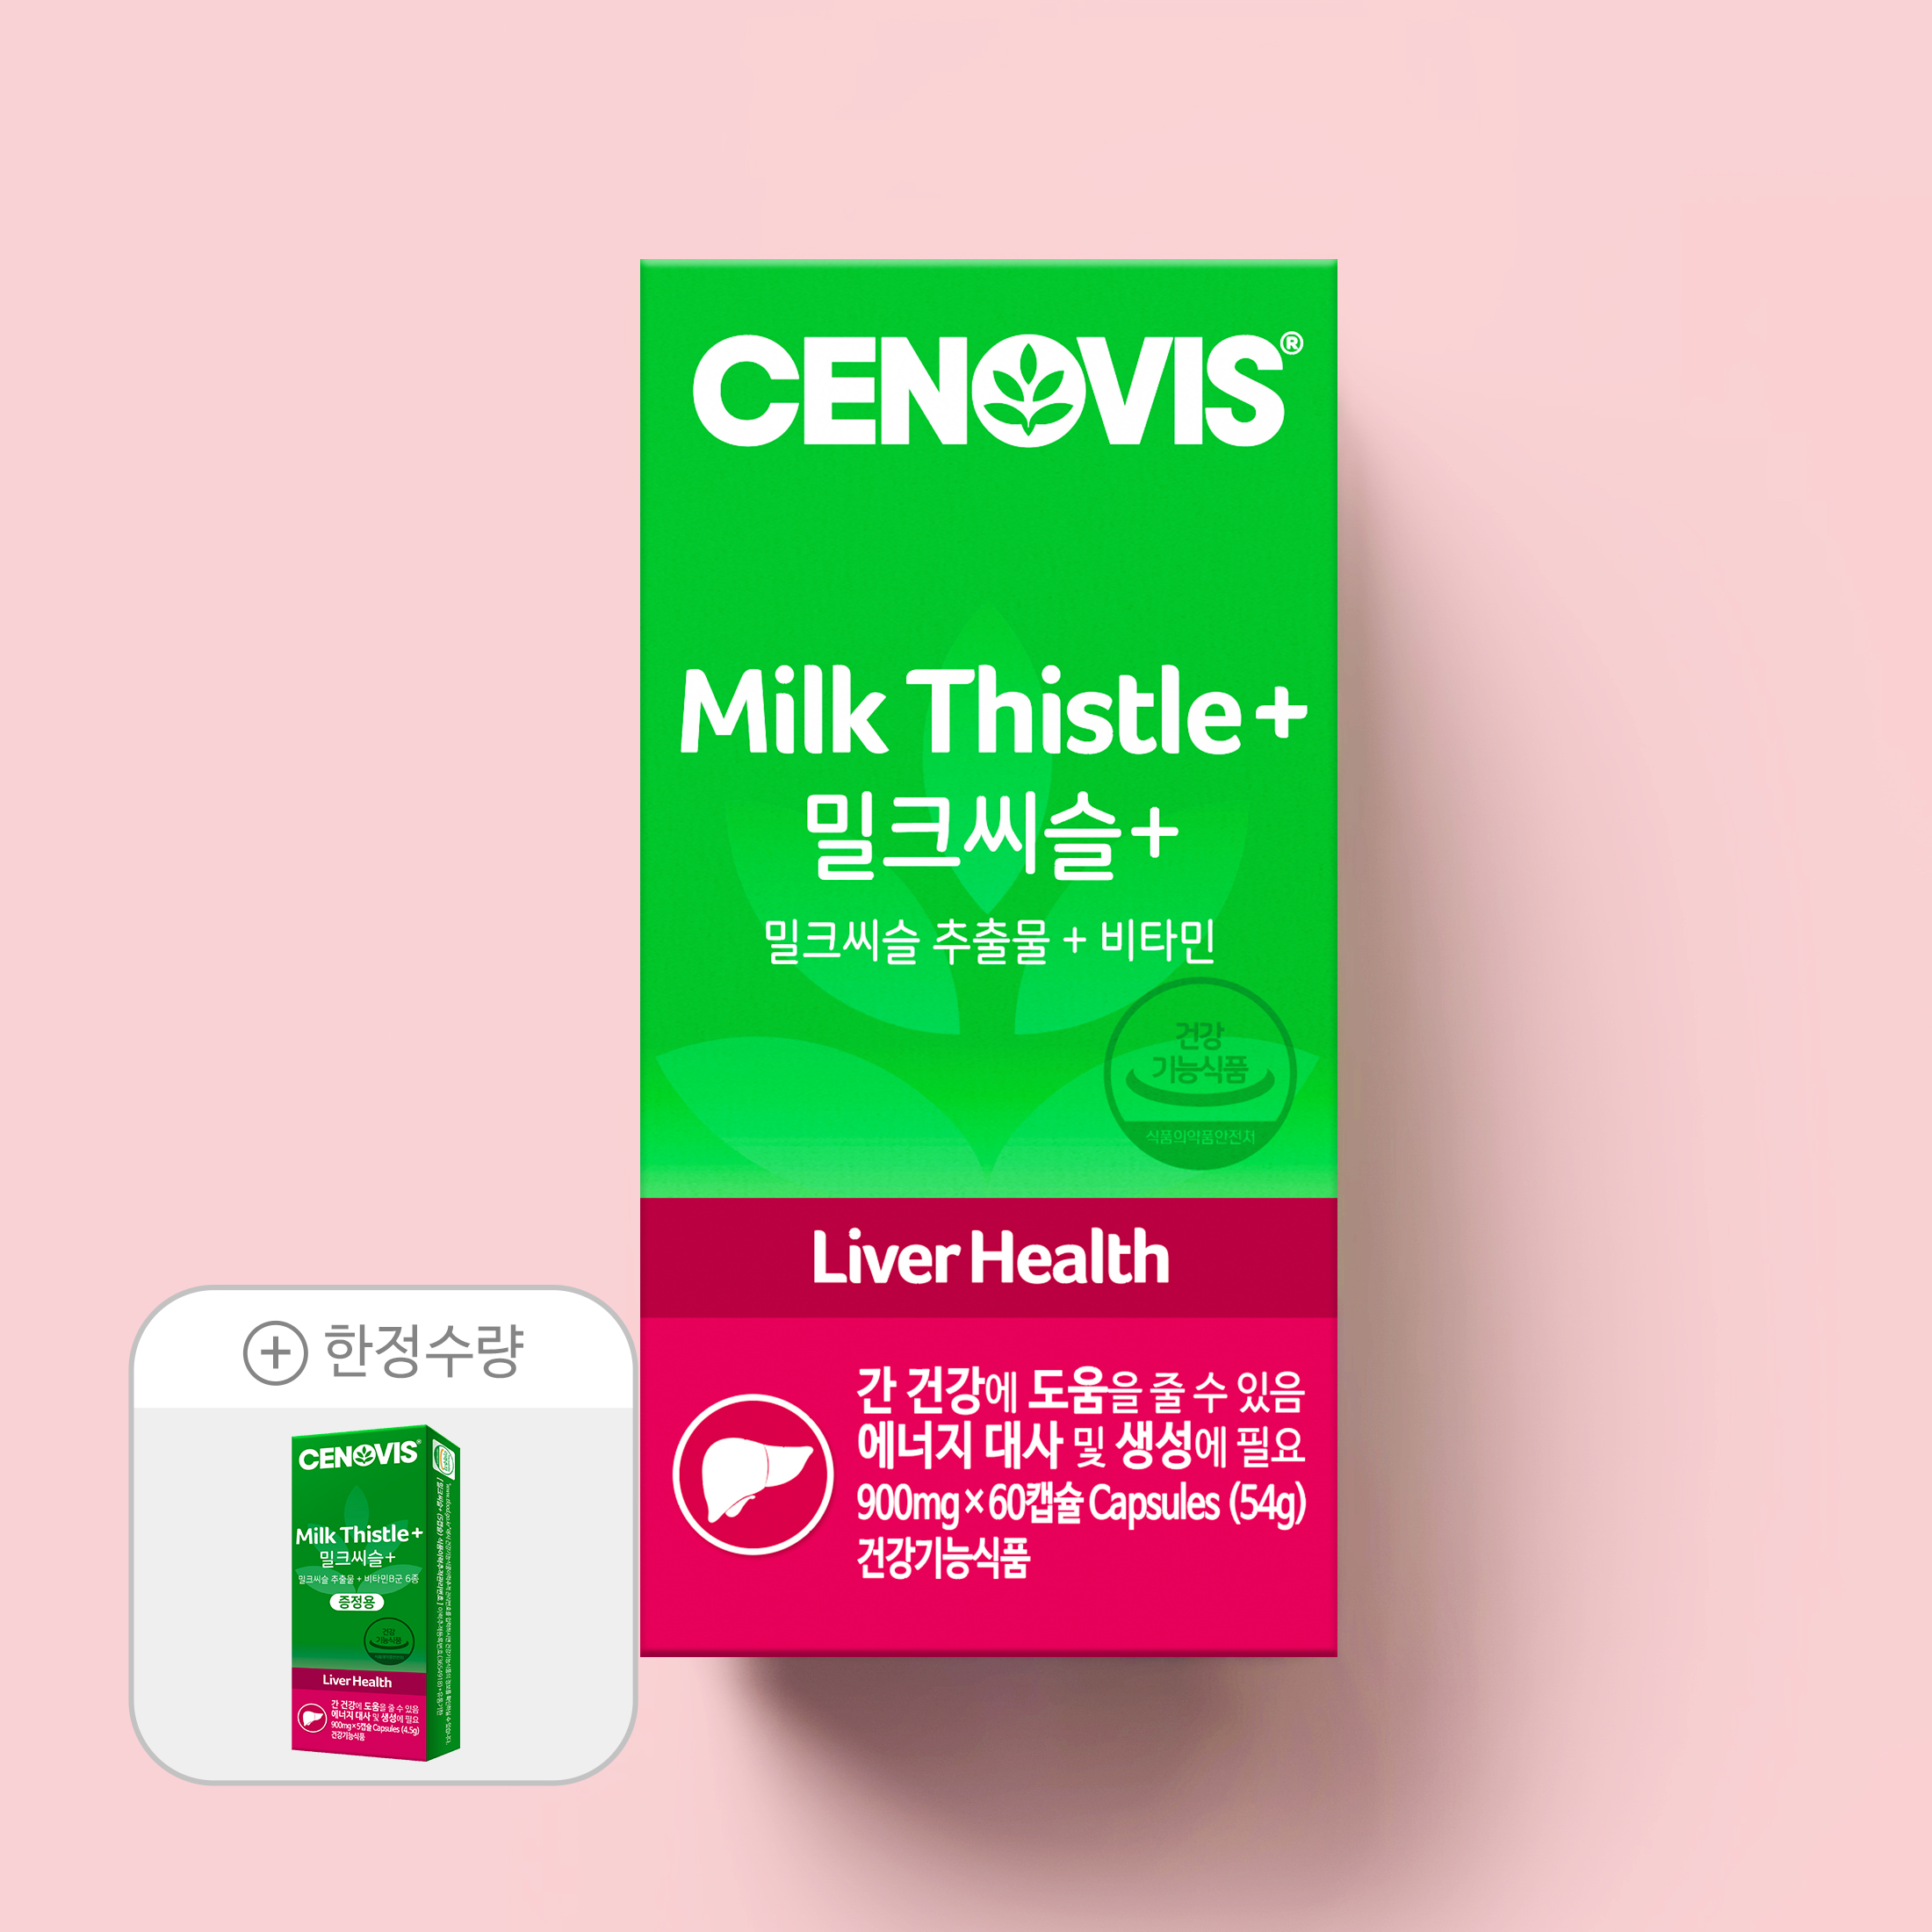 [이달의추천] 밀크씨슬 + 한정수량 사은품 증정